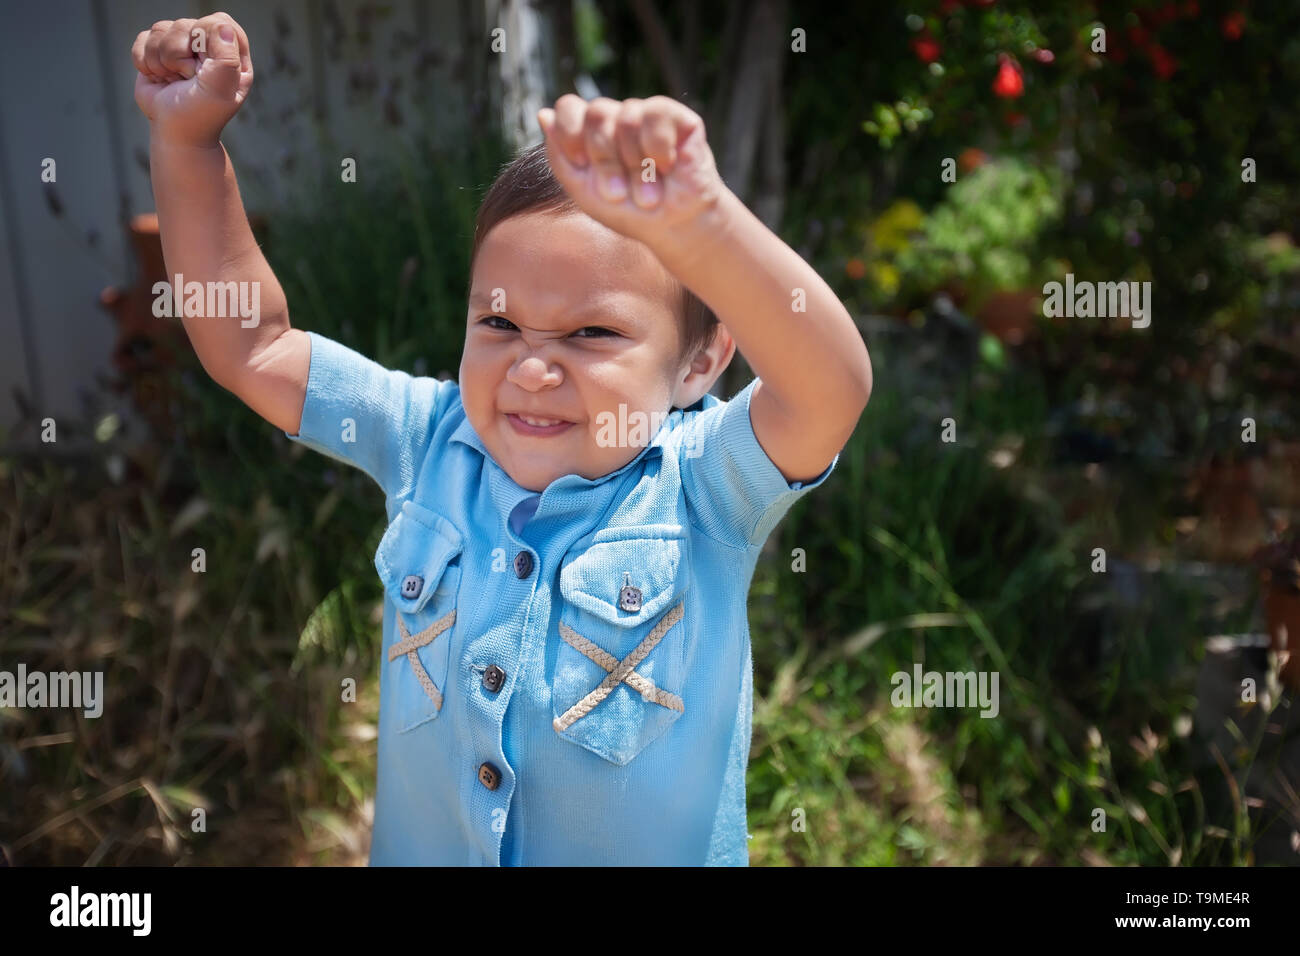 Ein 2 Jahre alter Junge stehend, indem er sich mit den Armen in der Luft und mit dem Ausdruck der Freude. Stockfoto